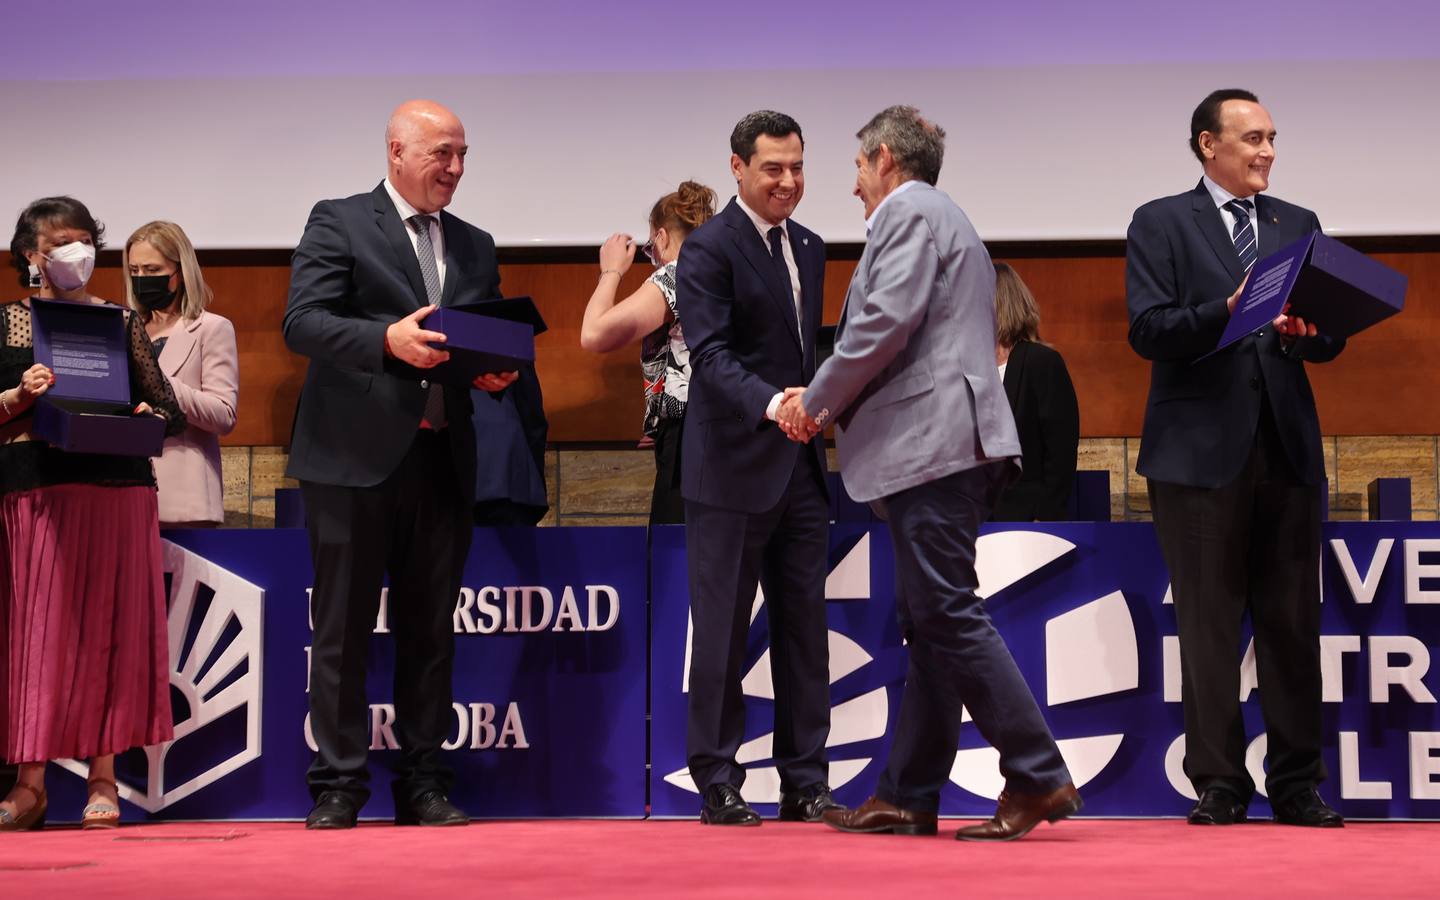 El reconocimiento de la Universidad de Córdoba a la sociedad en sus 50 años, en imágenes